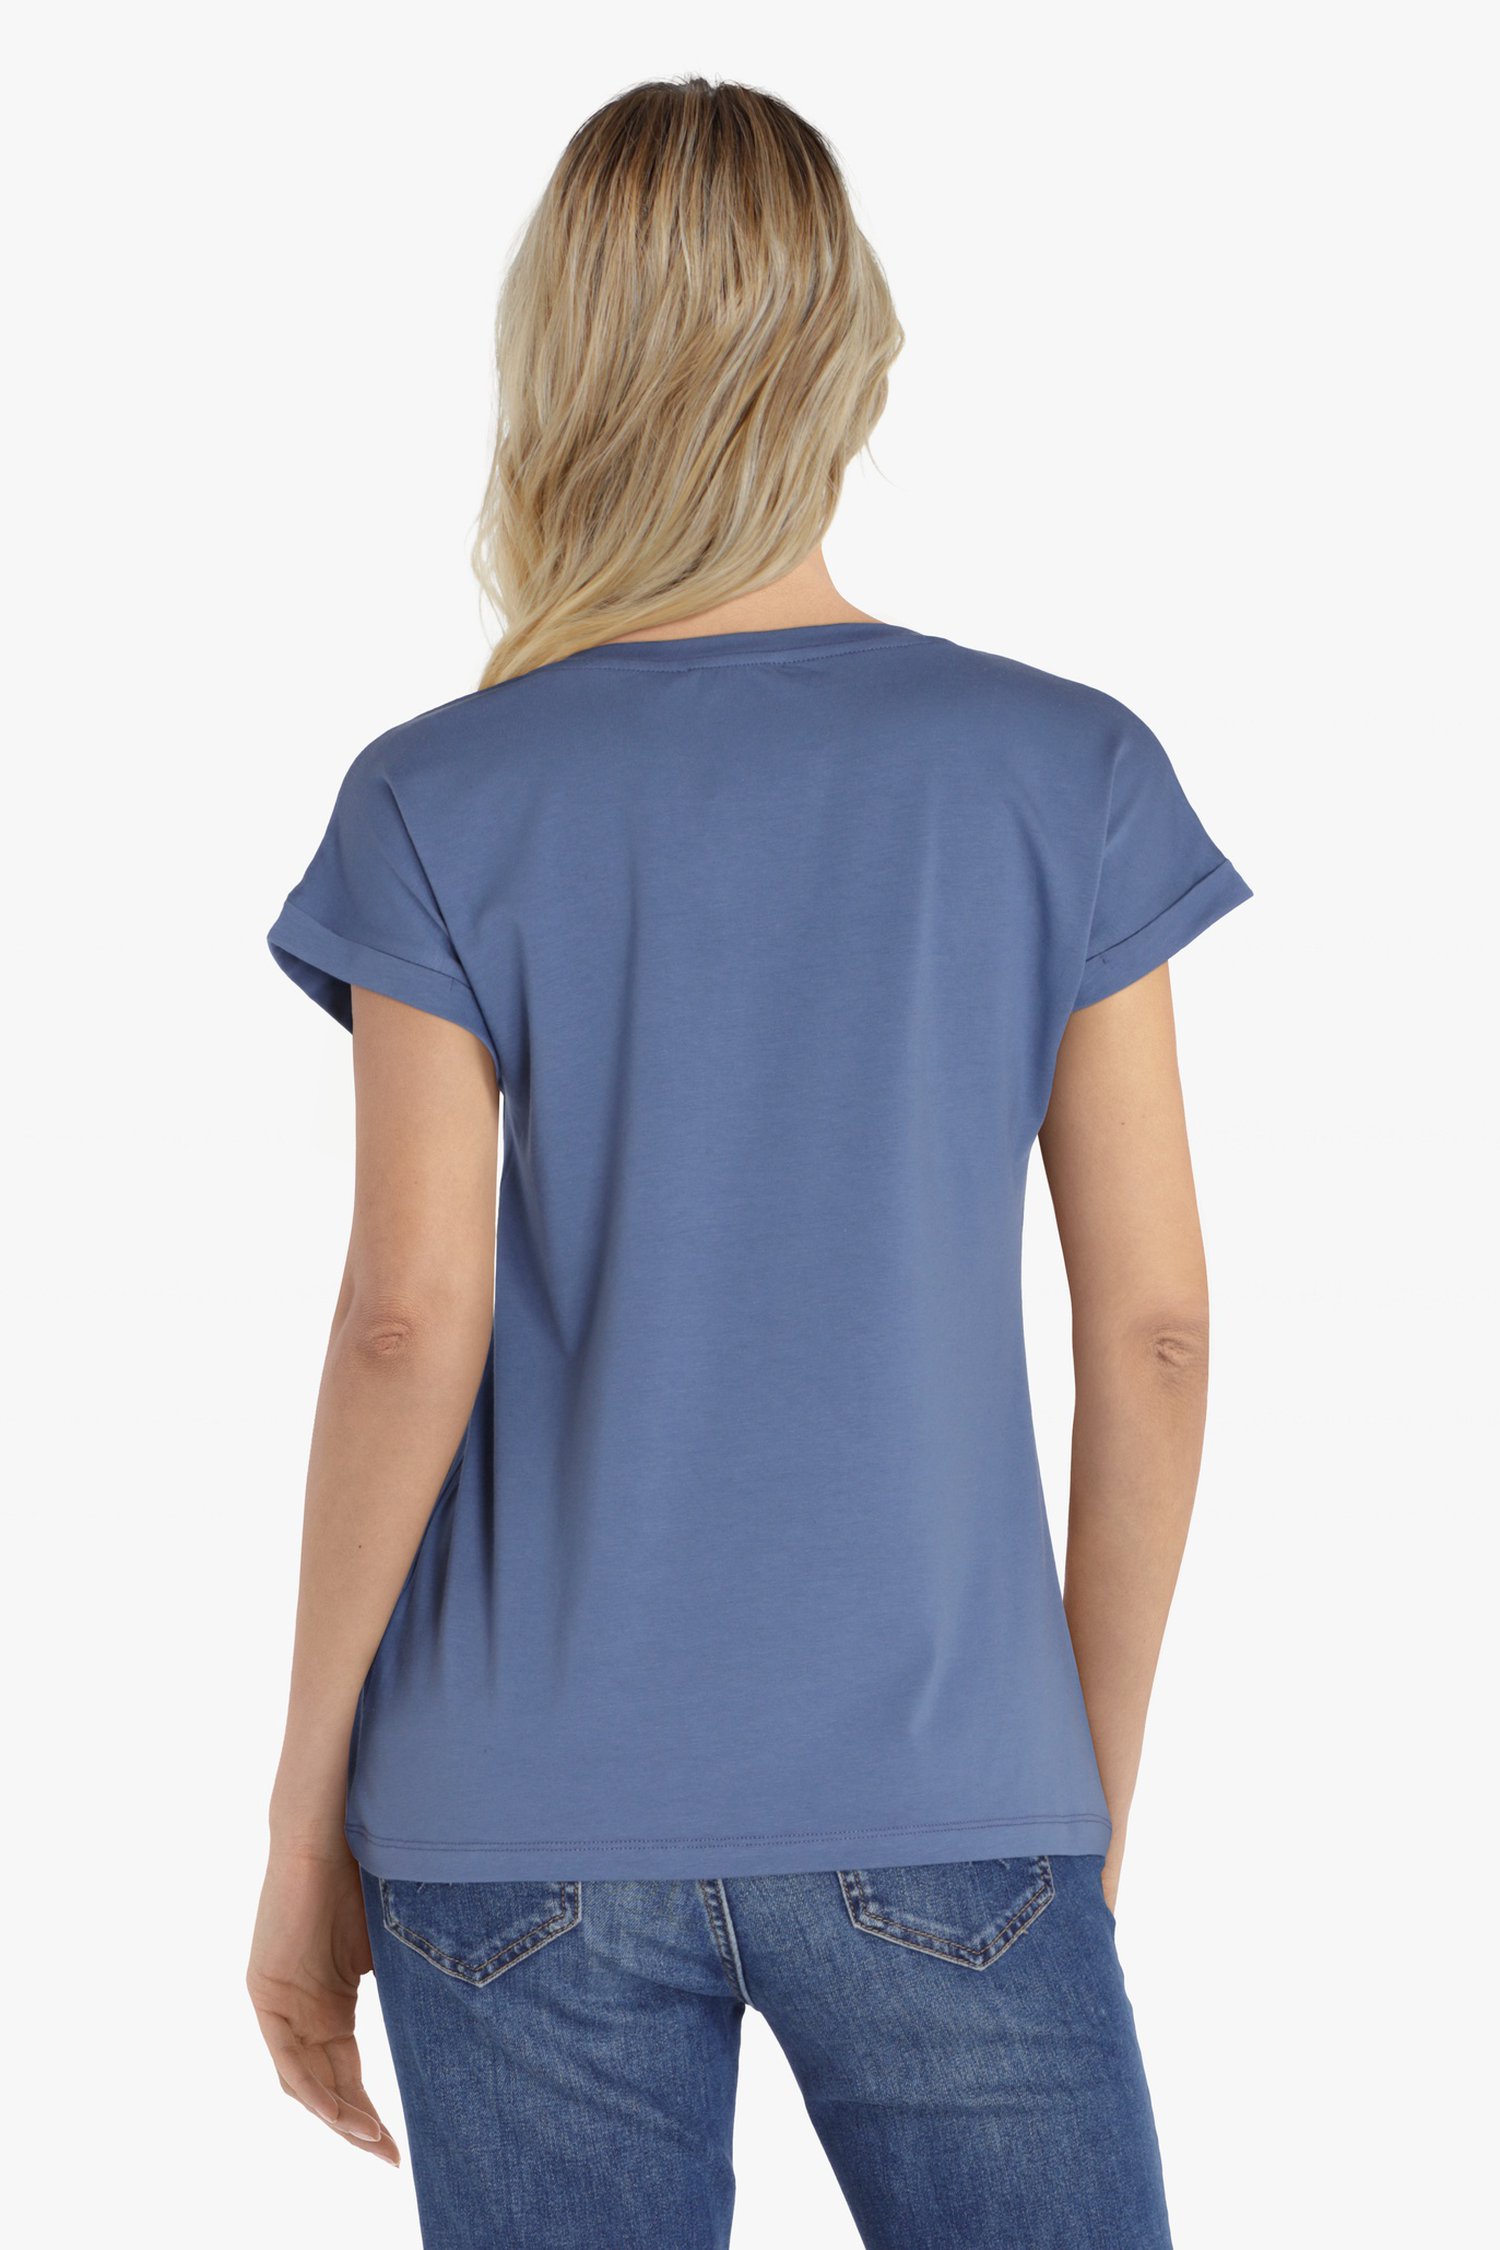 Blauw T-shirt met kleine V-hals van Liberty Island voor Dames